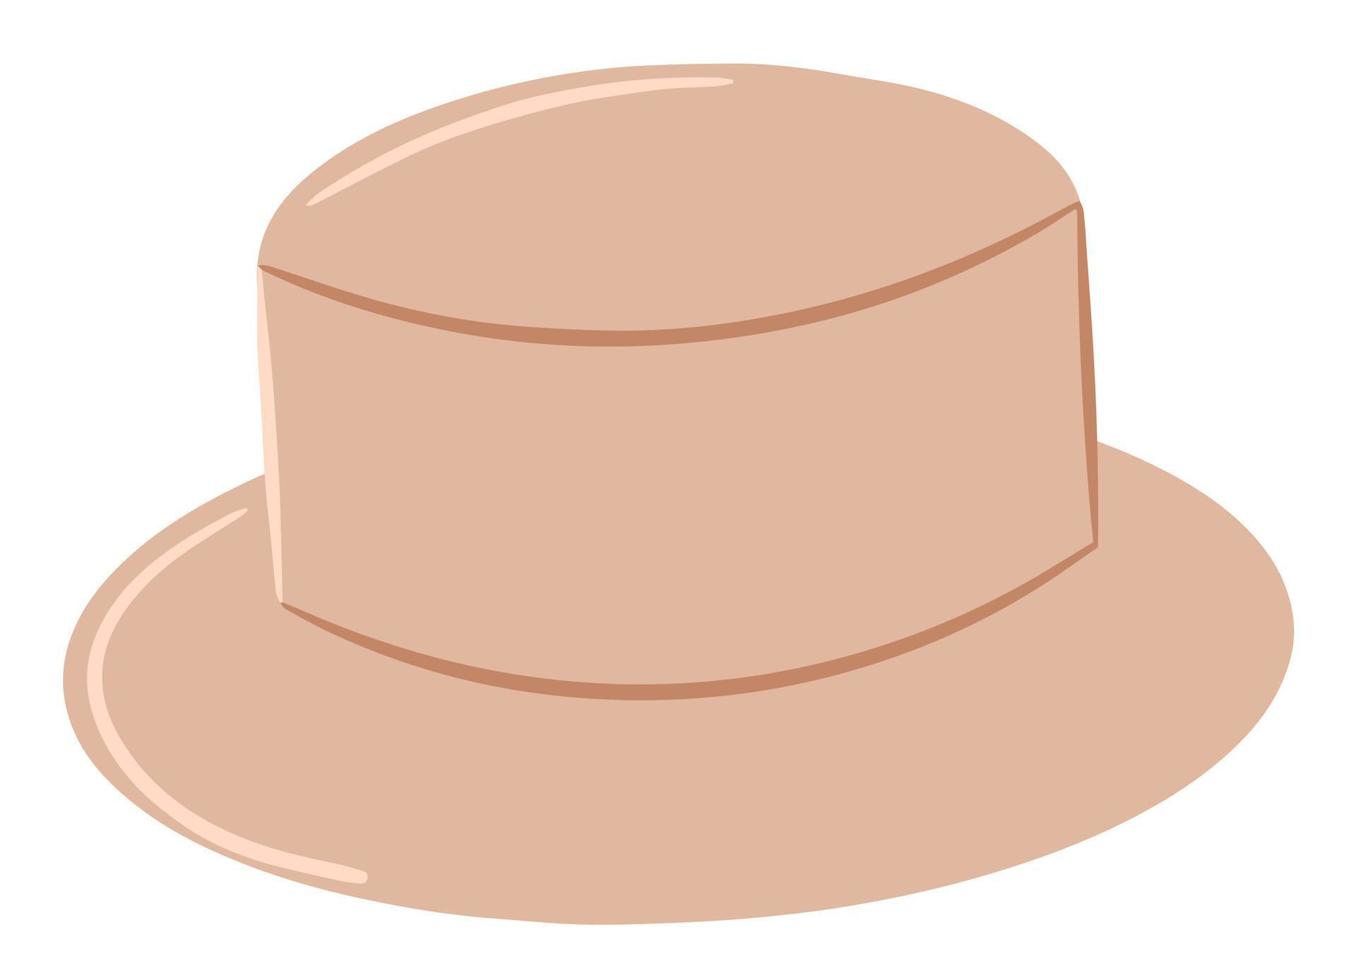 chapéu feminino, item de vestuário ou acessório, chapéu fofo, acessório de verão, chapéu de palha, estilo elegante e simples, ilustração de desenho animado, desenho vetorial, impressão vetor